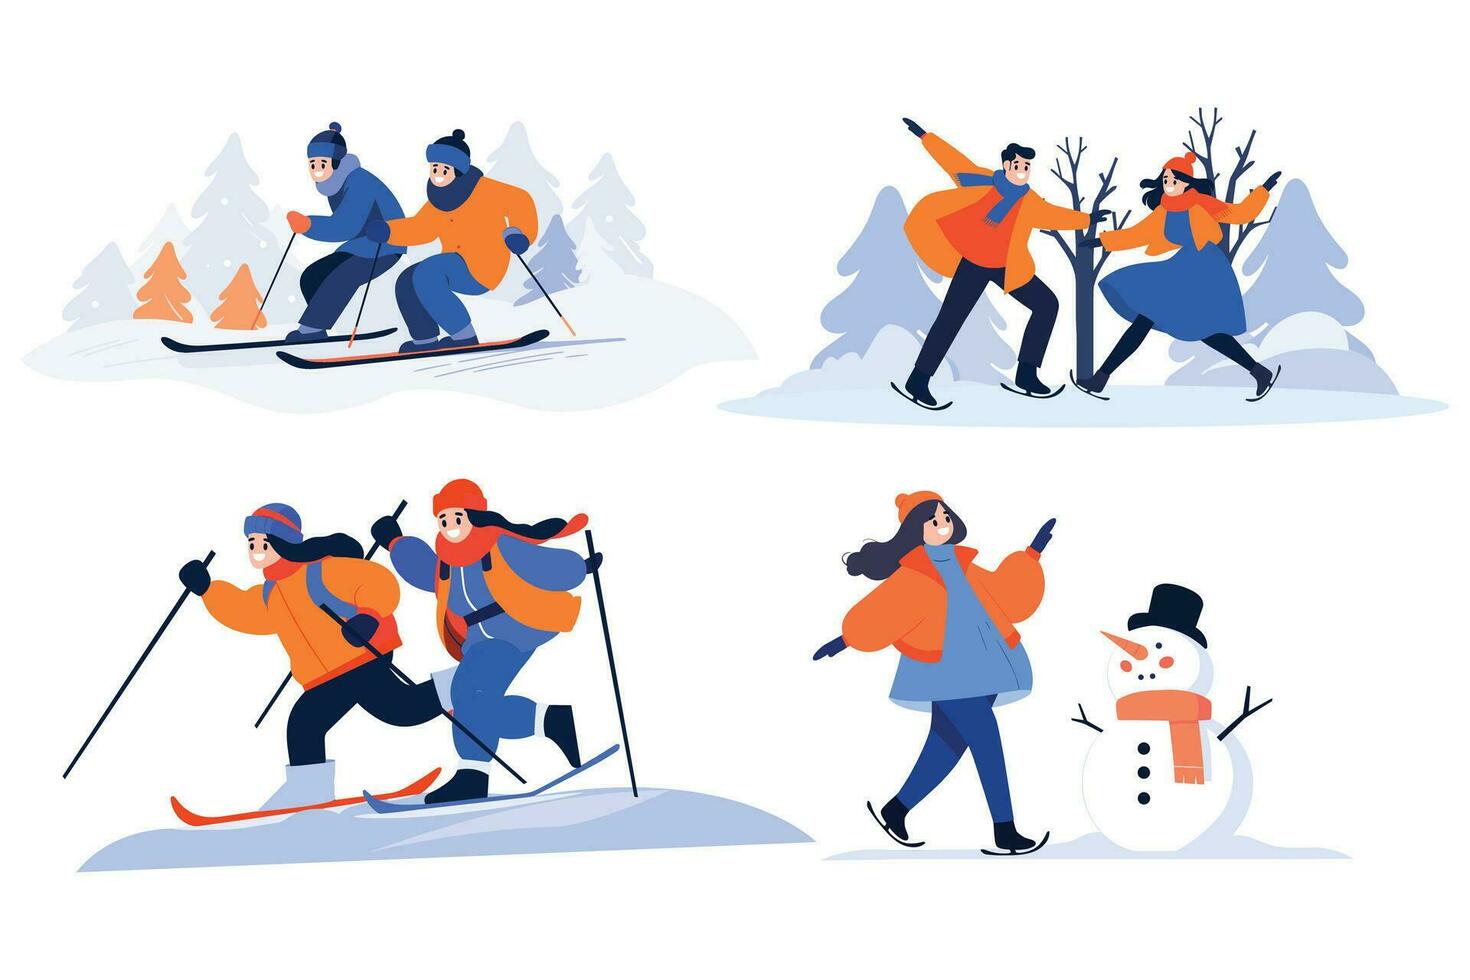 mano dibujado Pareja personaje jugando hielo Patinaje en invierno en plano estilo vector